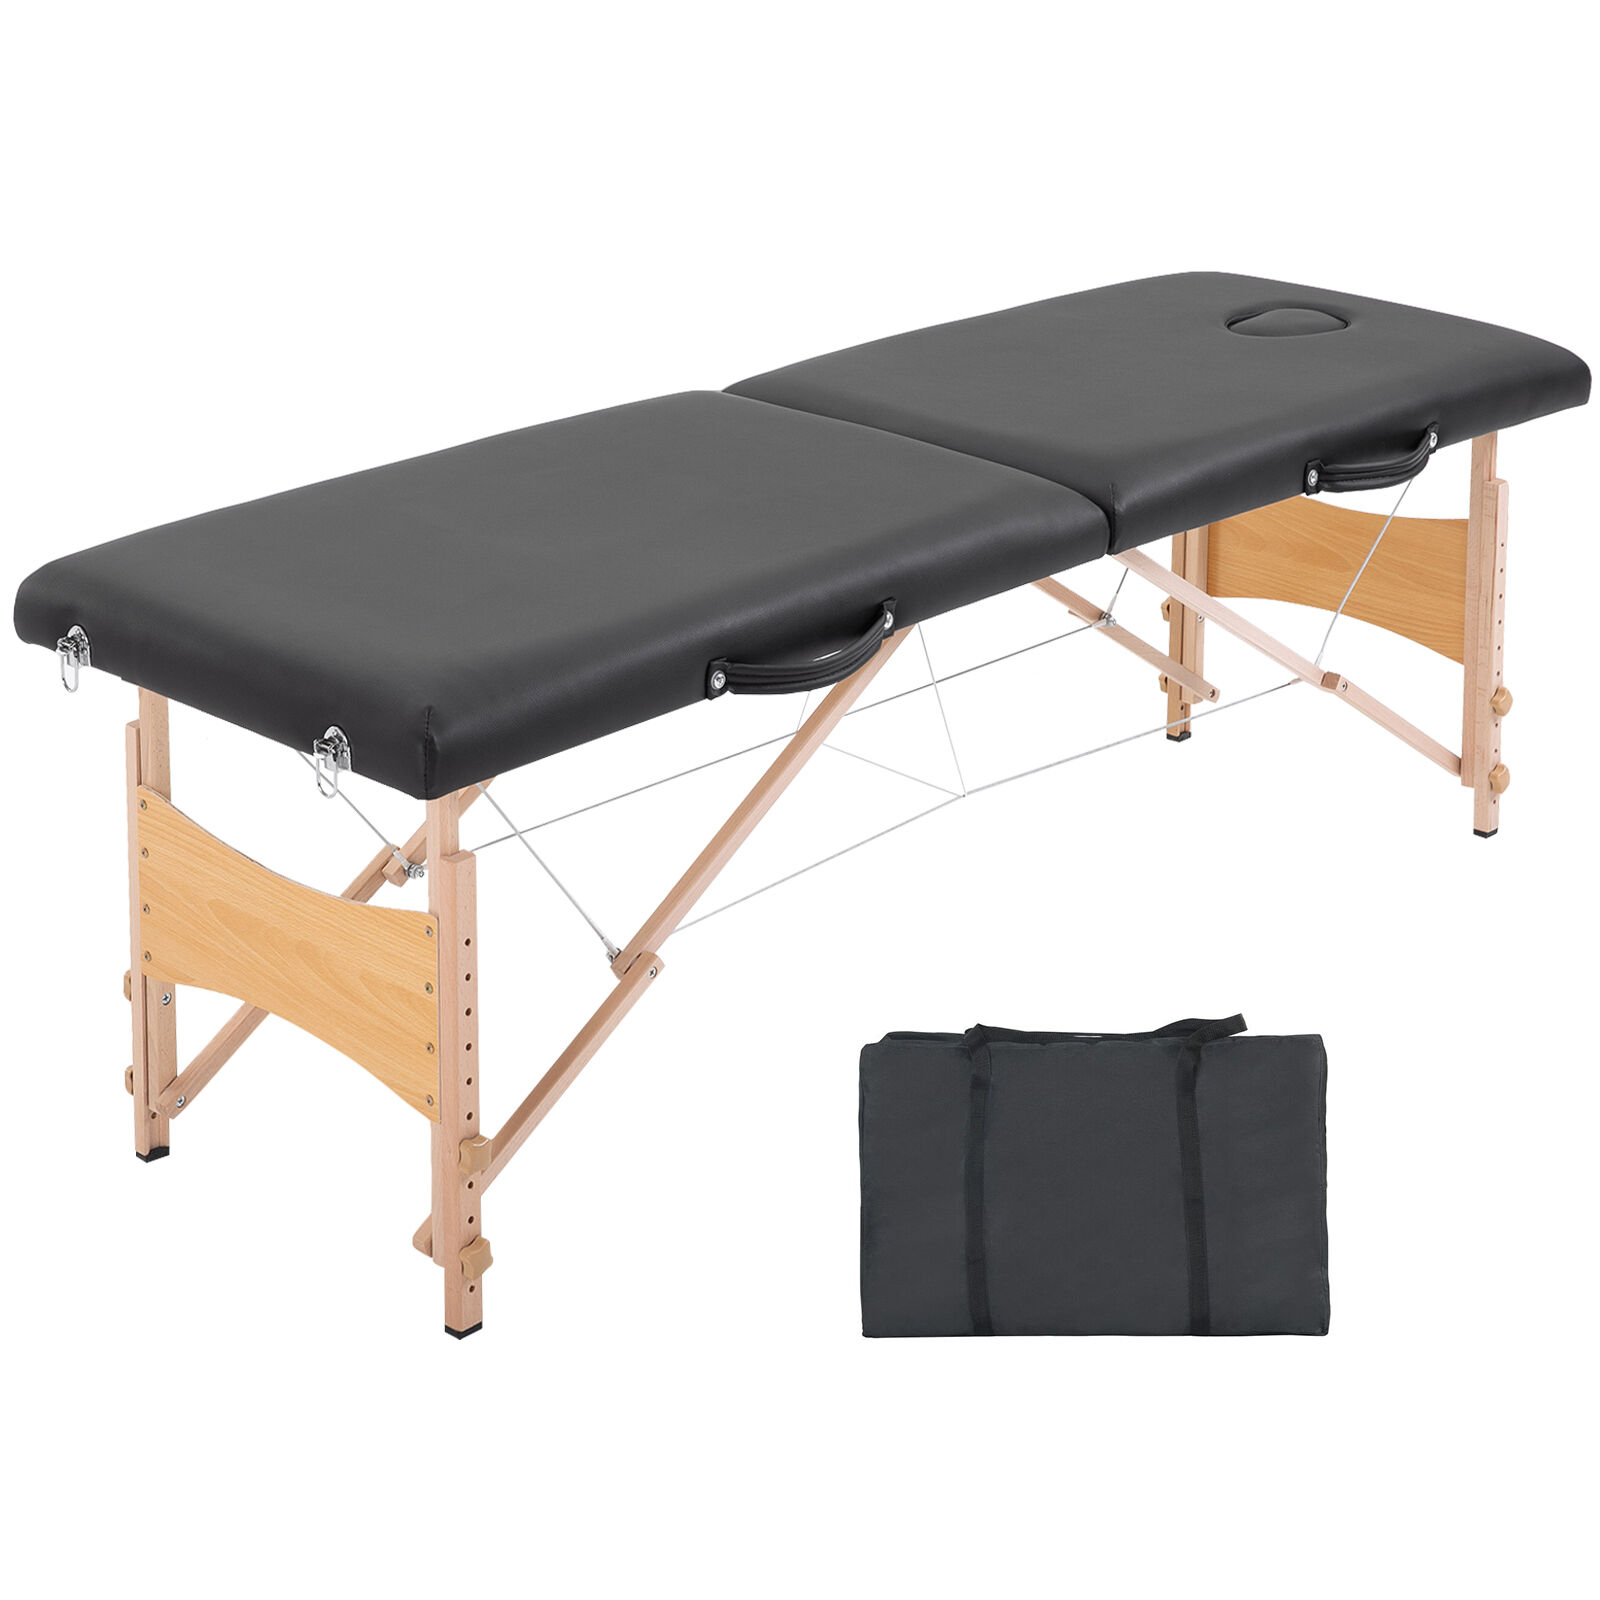 HOMCOM Table de massage pliante lit table de beauté 2 zones portable sac de tranport inclus hauteur réglable dim. 186L x 60l x 58-81H cm bois massif revêtement synthétique noir